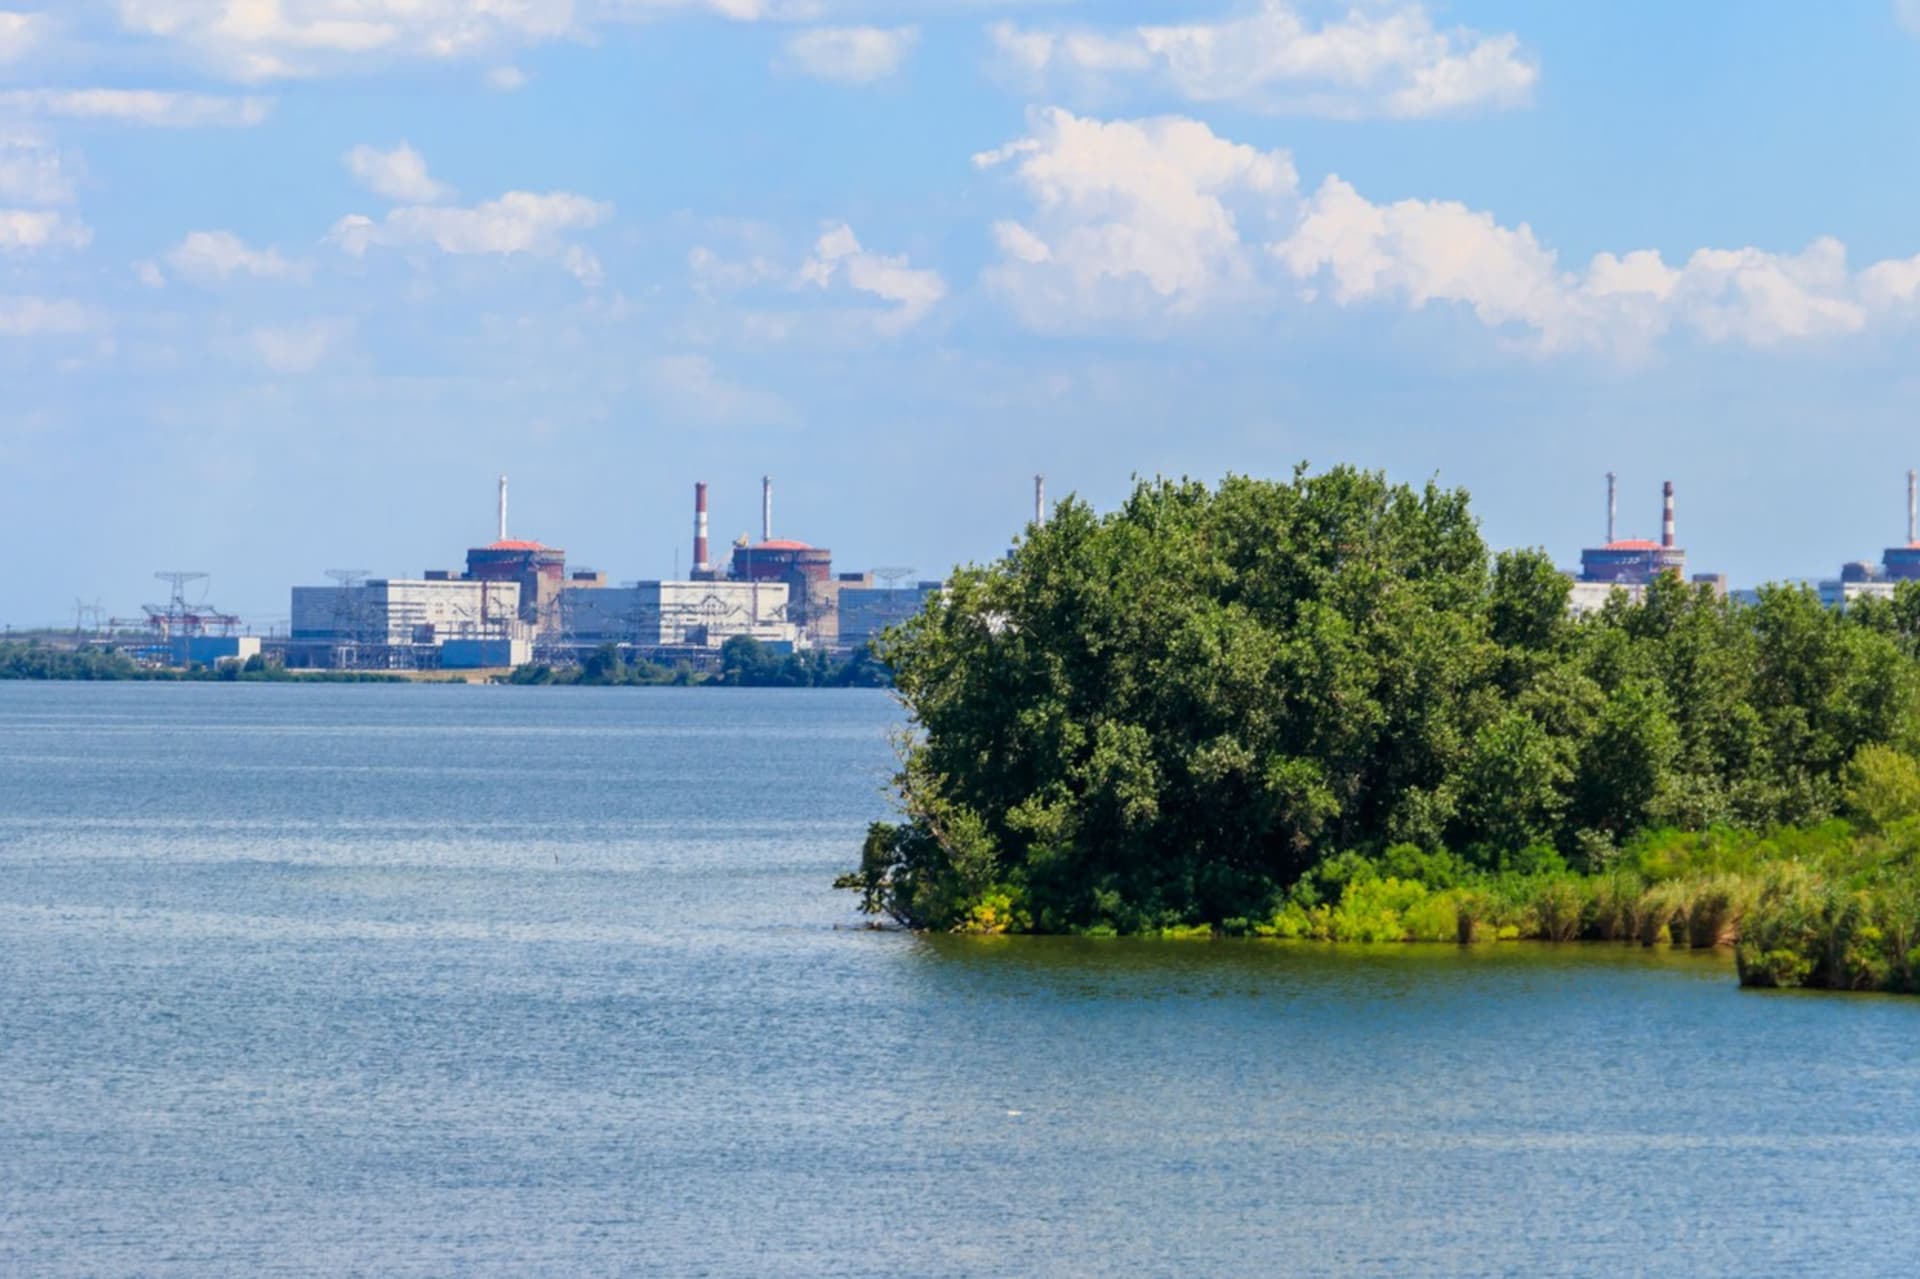 Záporožská jaderná elektrárna leží na řece Dněpr